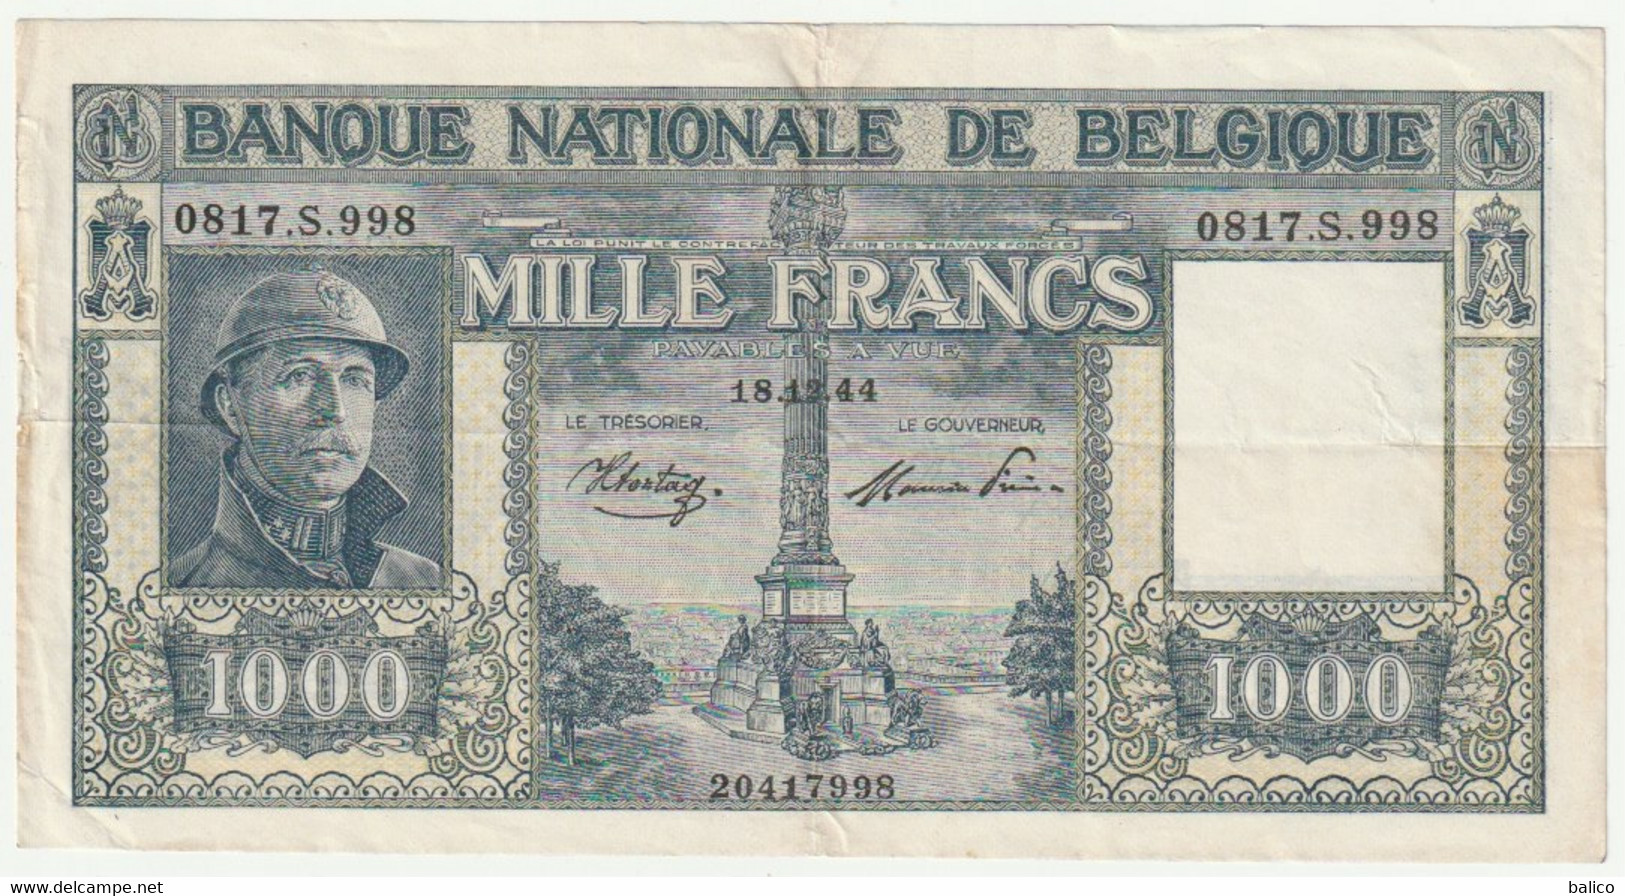 Banque Nationale De Belgique - Mille Francs 18/12/44 - N° 0817.S.998 - 1000 Francs  (très Rare) 20417998 - [ 9] Verzamelingen